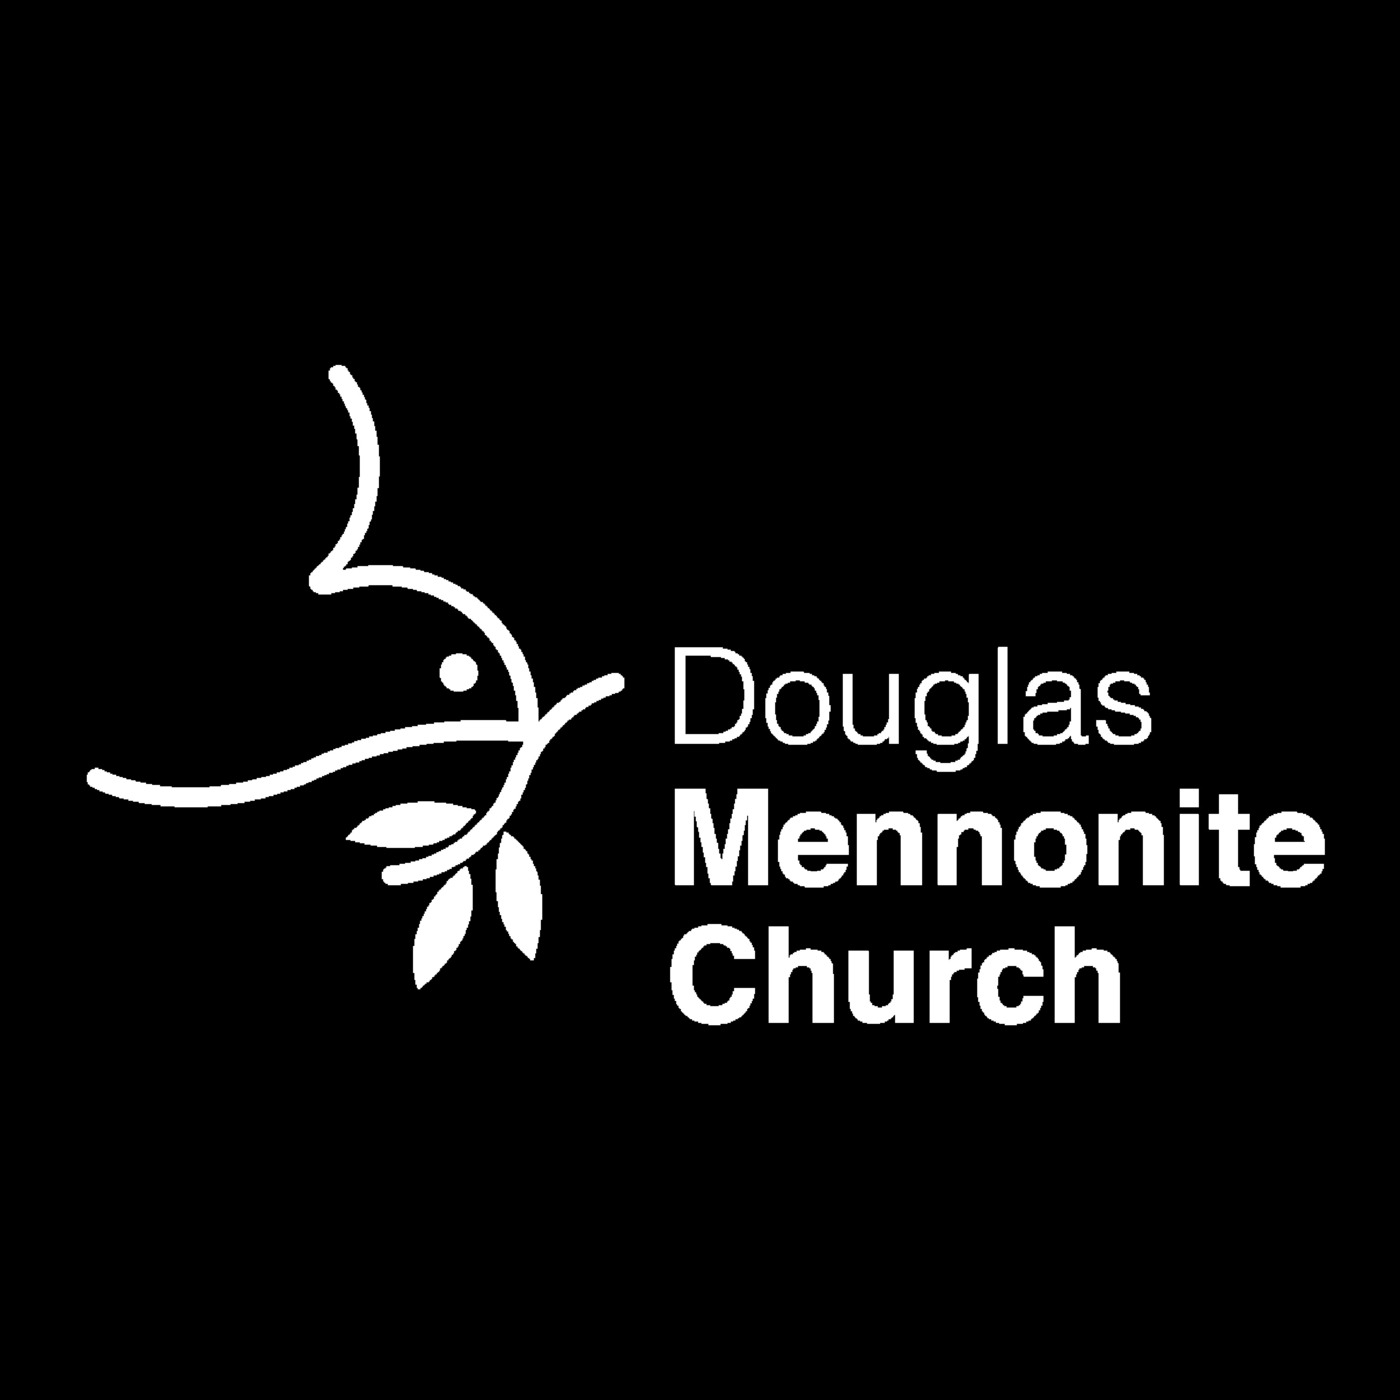 Douglas Mennonite Church